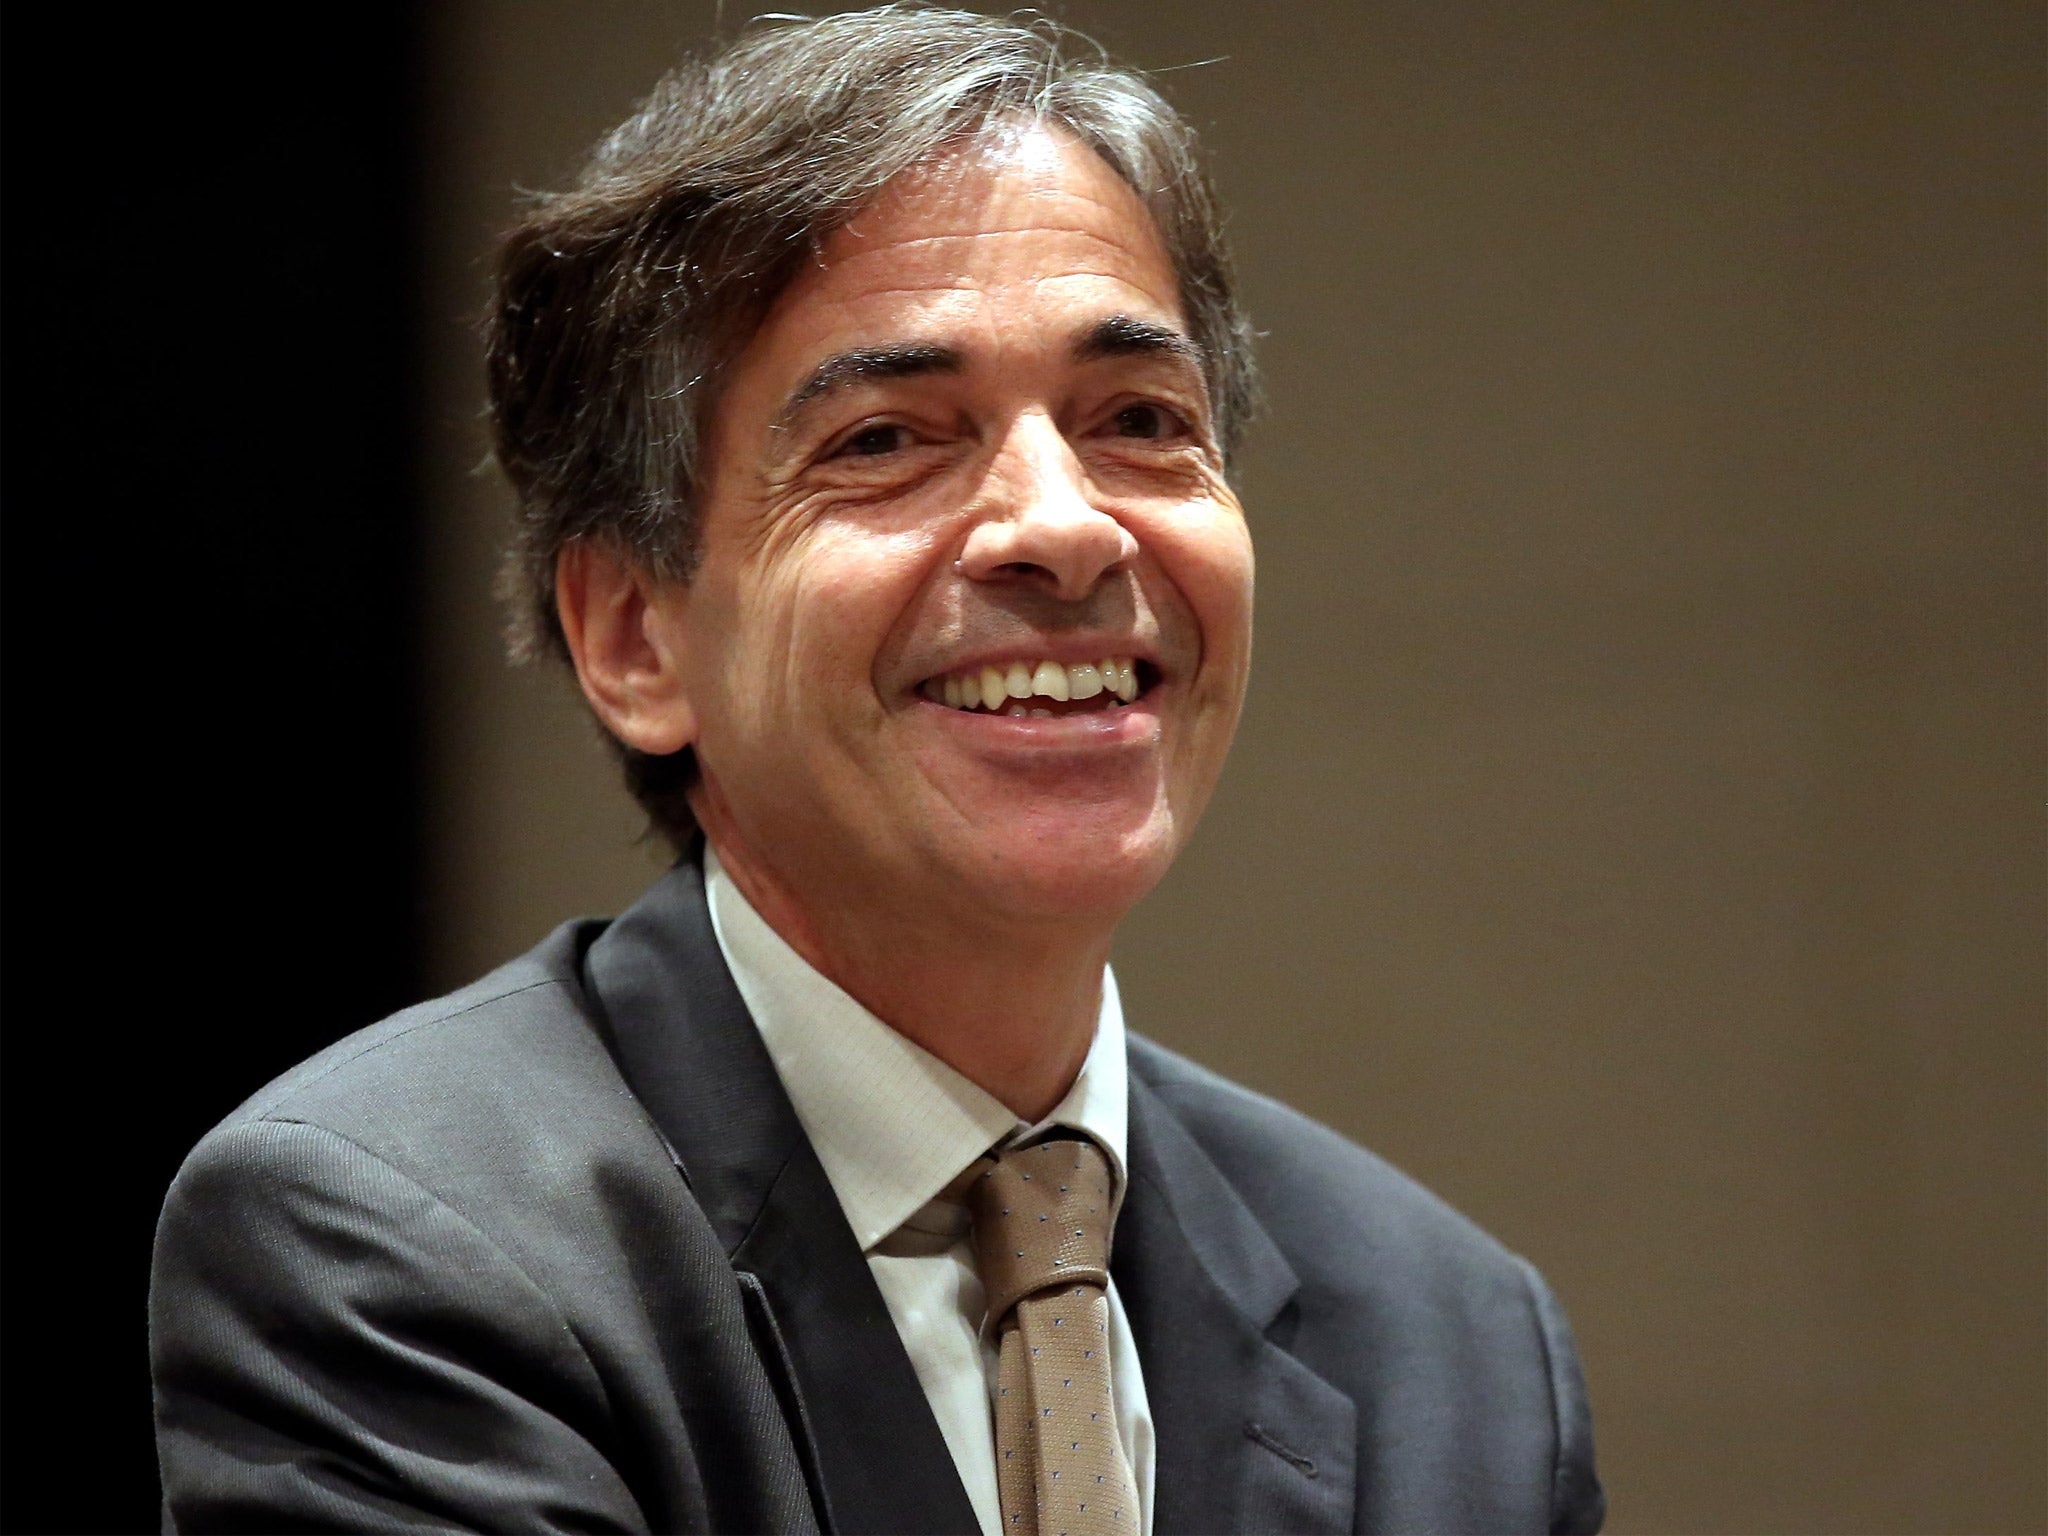 Luis Fernandes, Brazilian Deputy Sports Minister